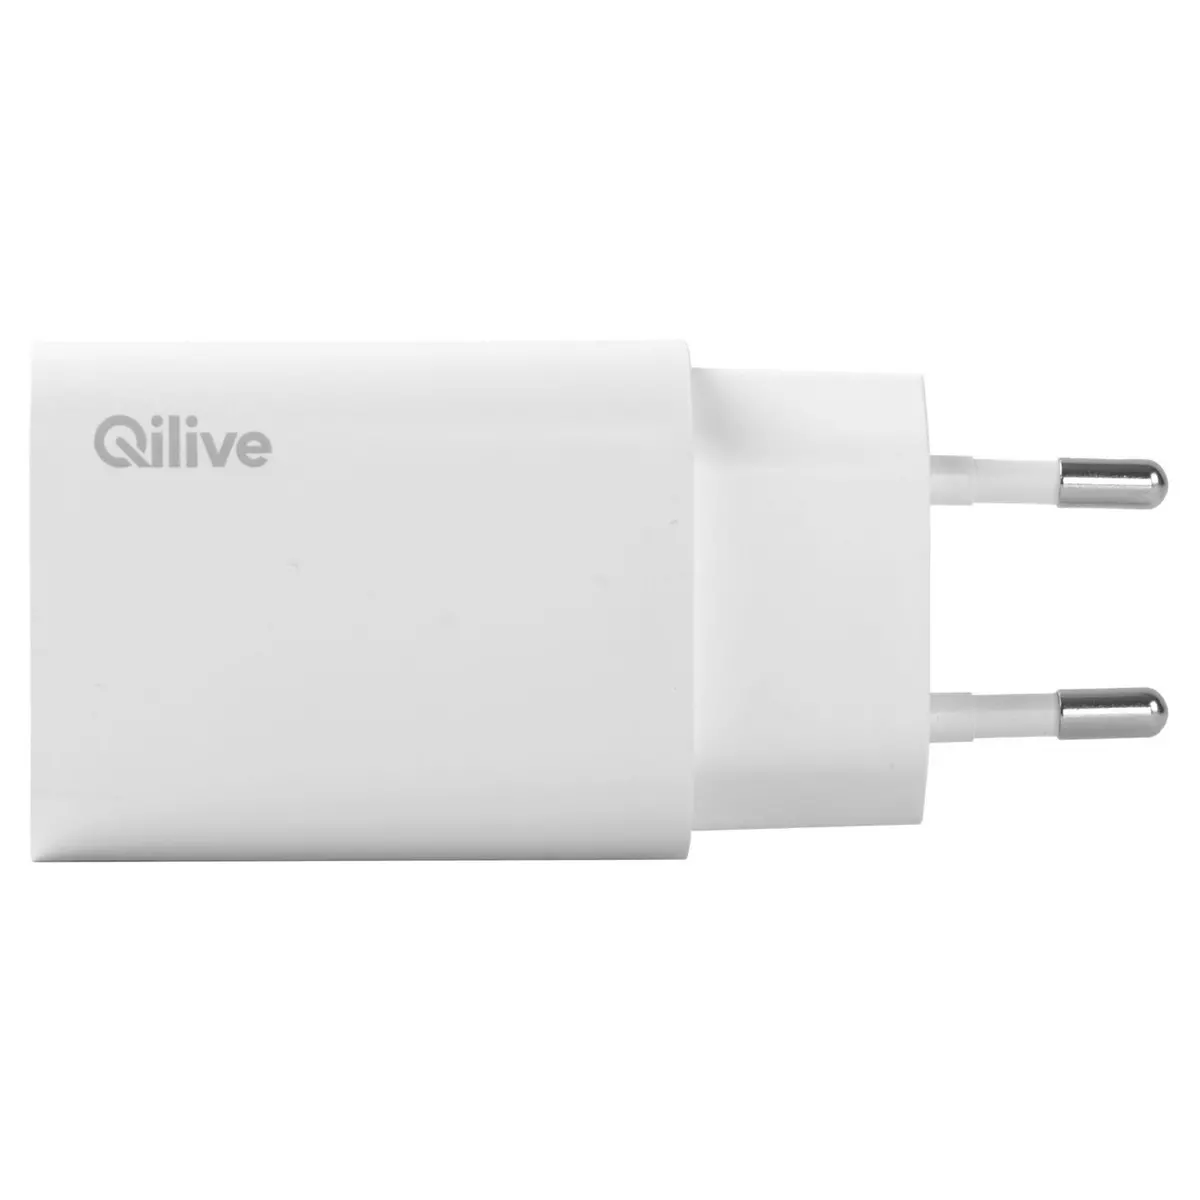 QILIVE Chargeur maison USB C - Blanc